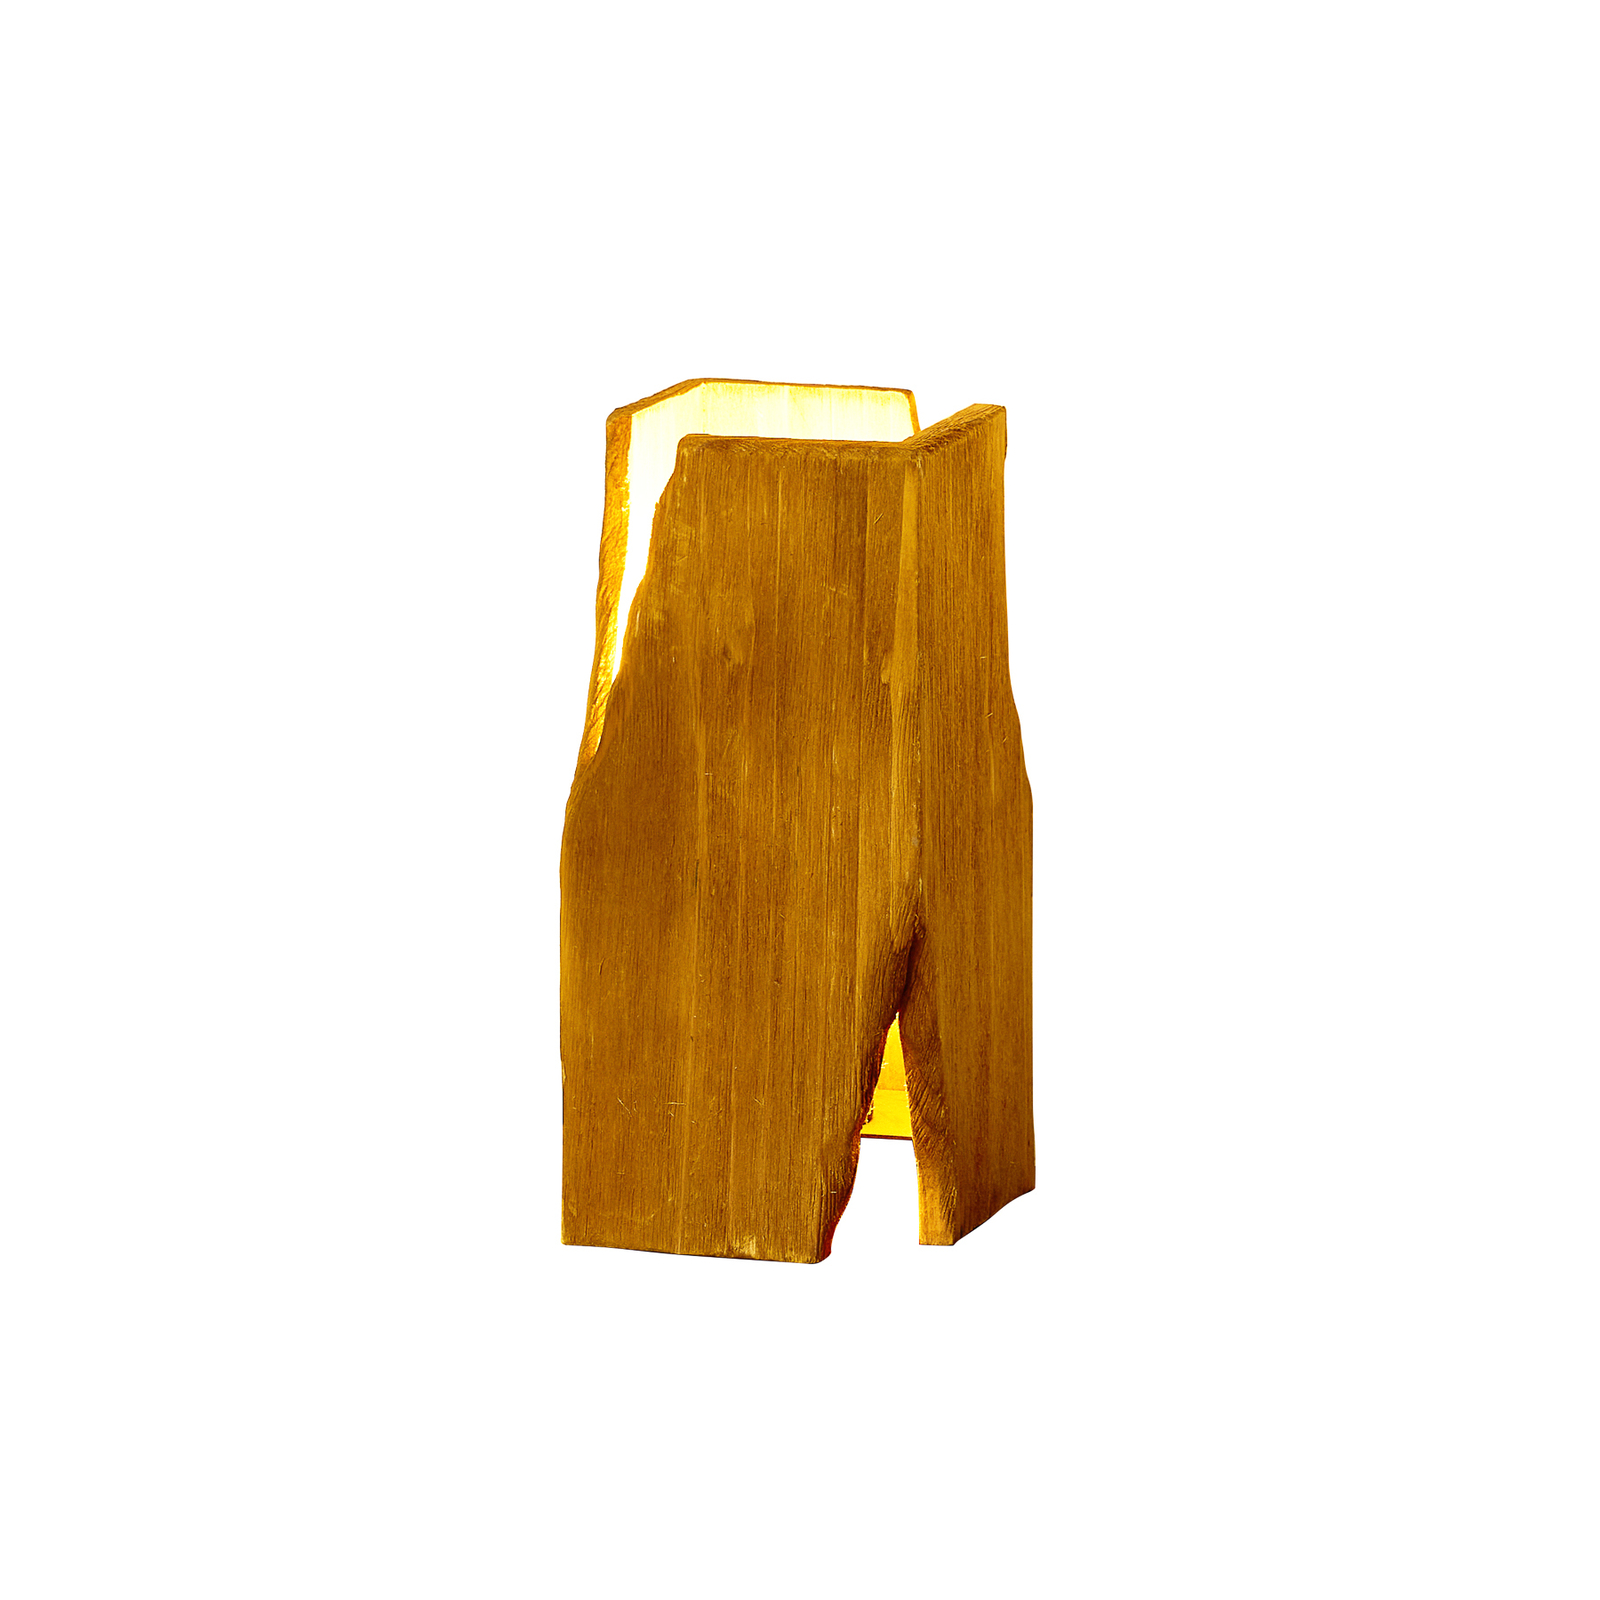 Tischleuchte Venus, braun, Höhe 25 cm, Holz